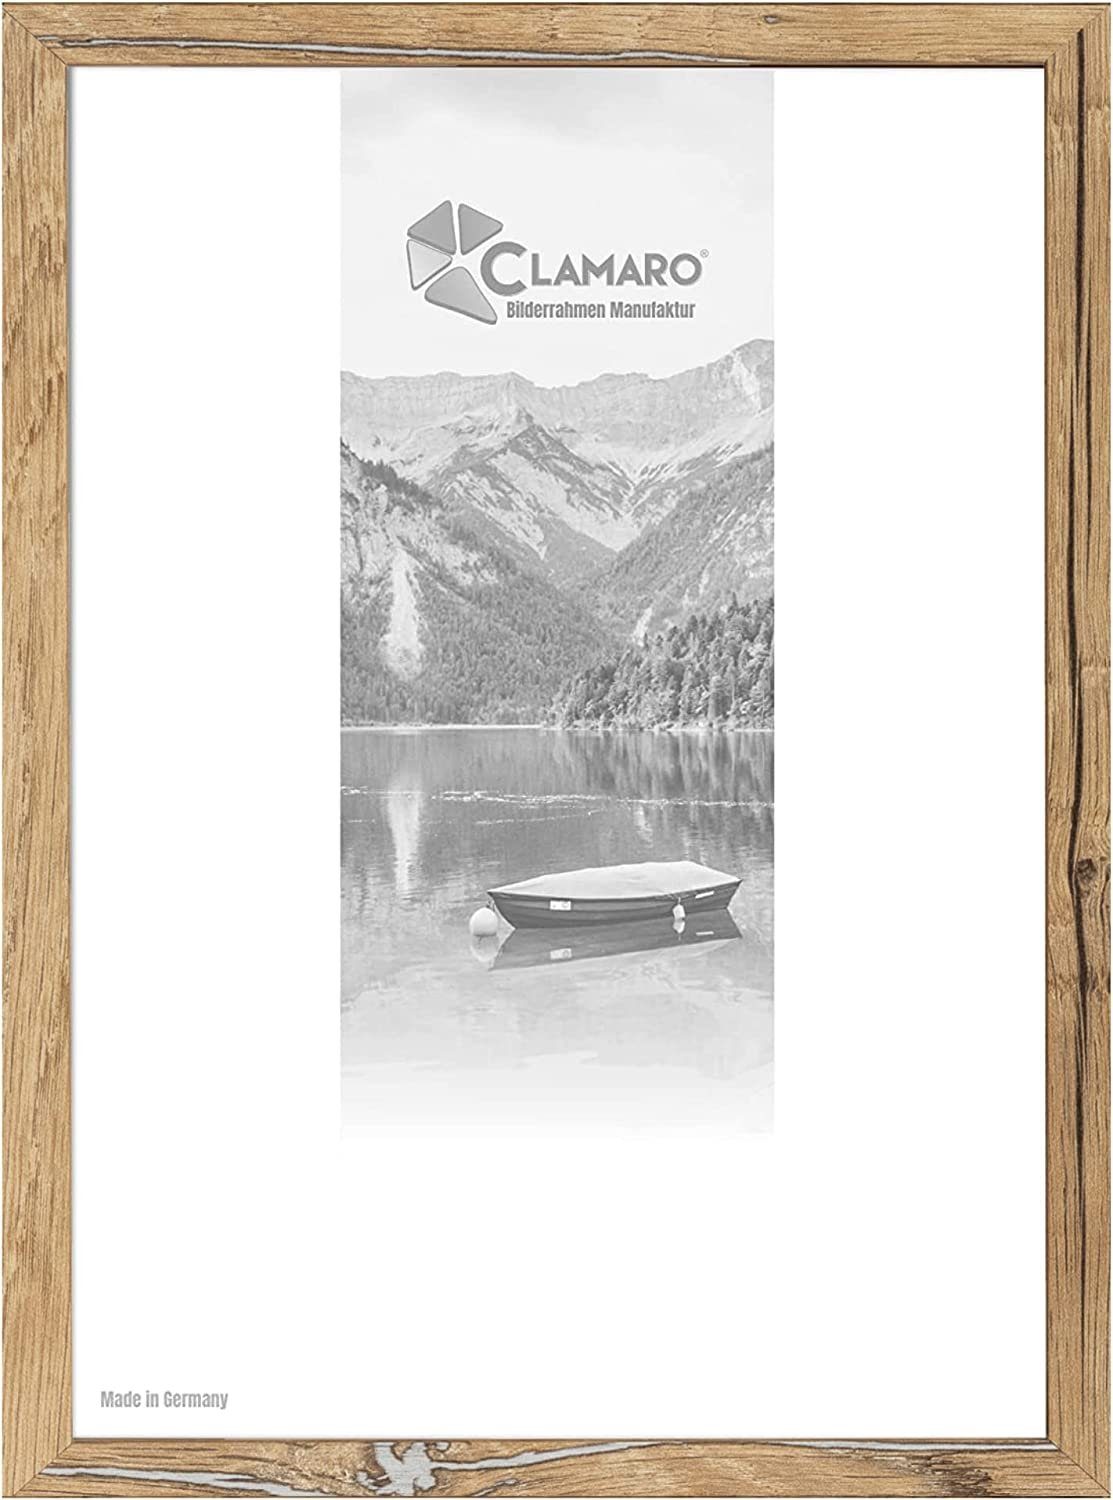 Clamaro Bilderrahmen Bilderrahmen Eiche Altholz CLAMARO Collage nach Maß  FSC® Holz Modern eckig M3016 10x20 in Eiche Altholz